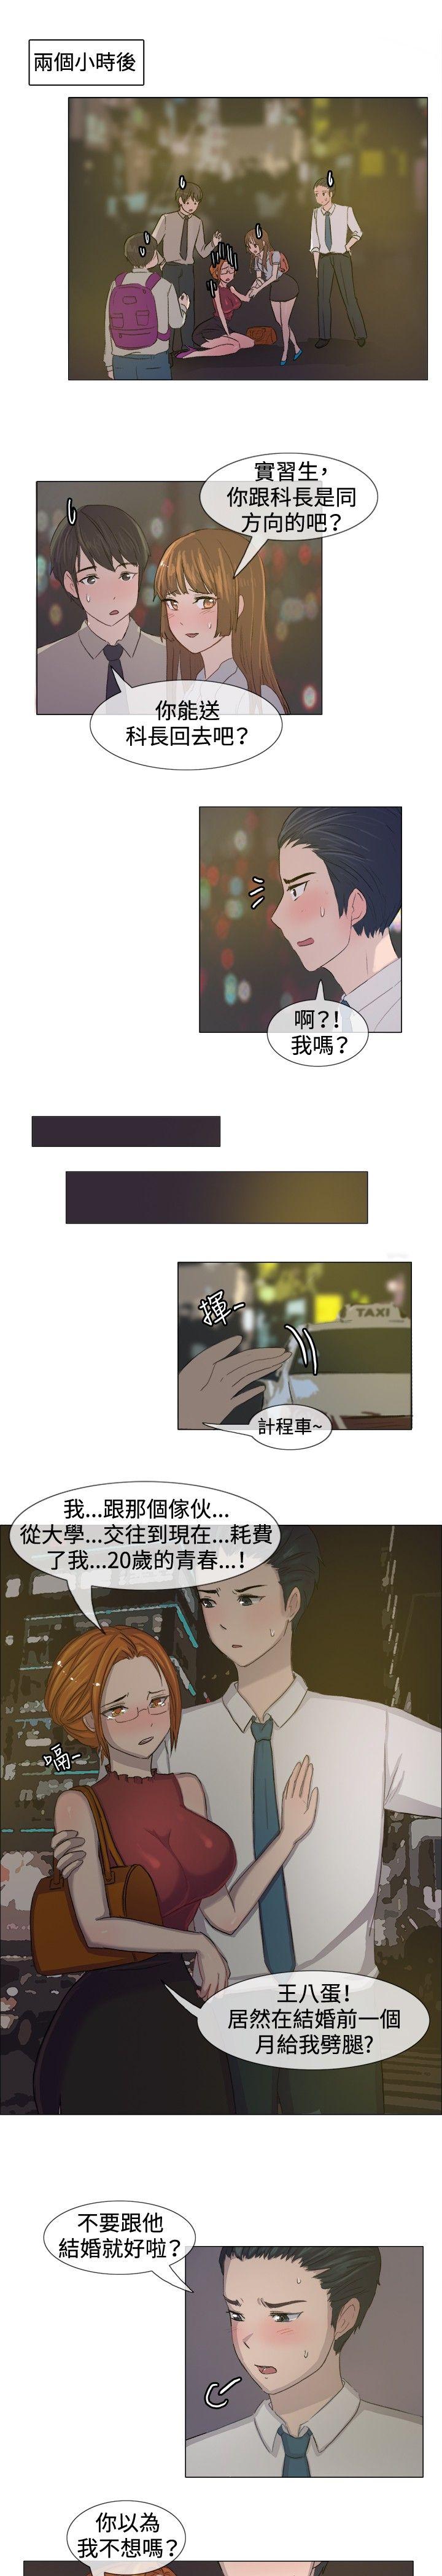 韩国污漫画 一起享用吧 第5话 4